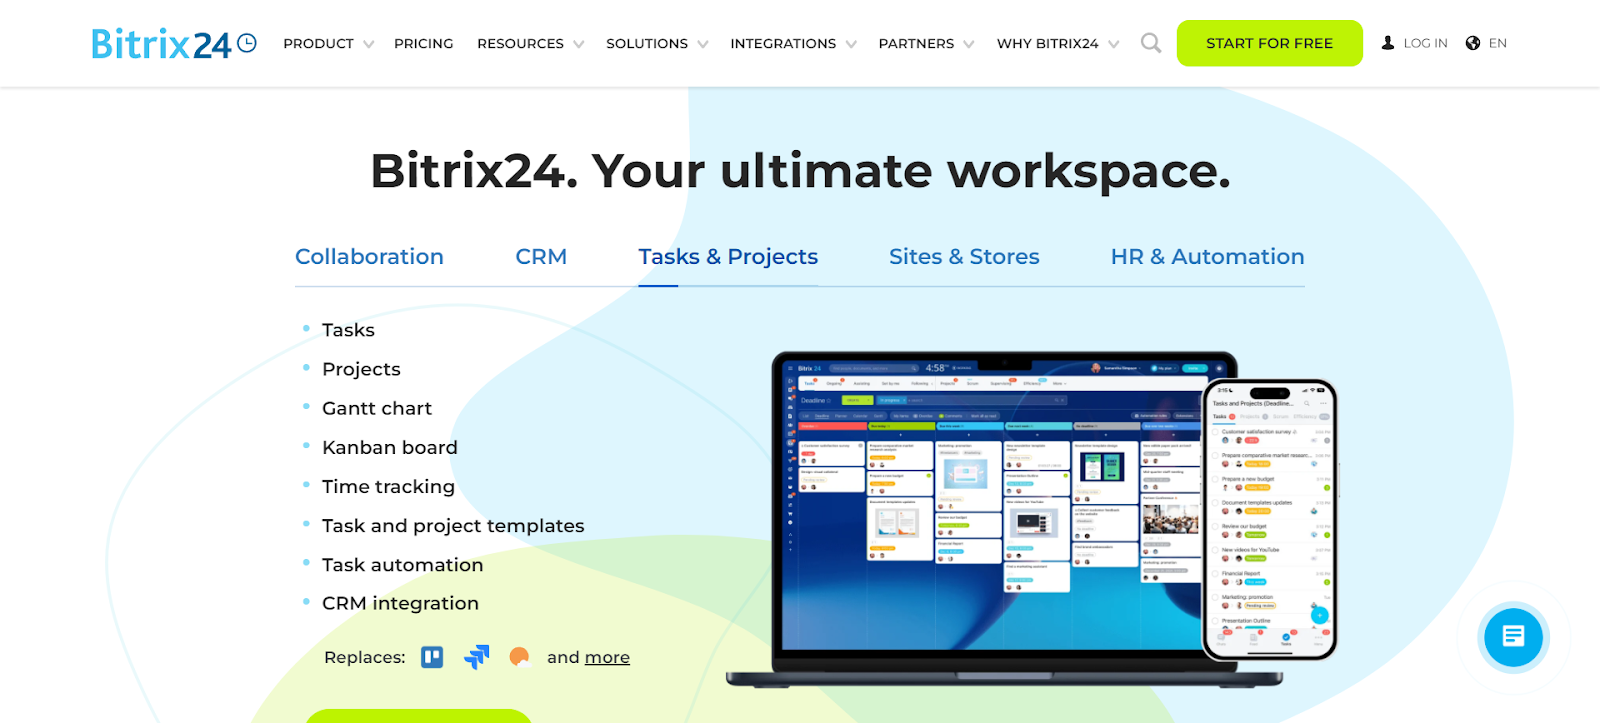 A screenshot of Bitrix24's website